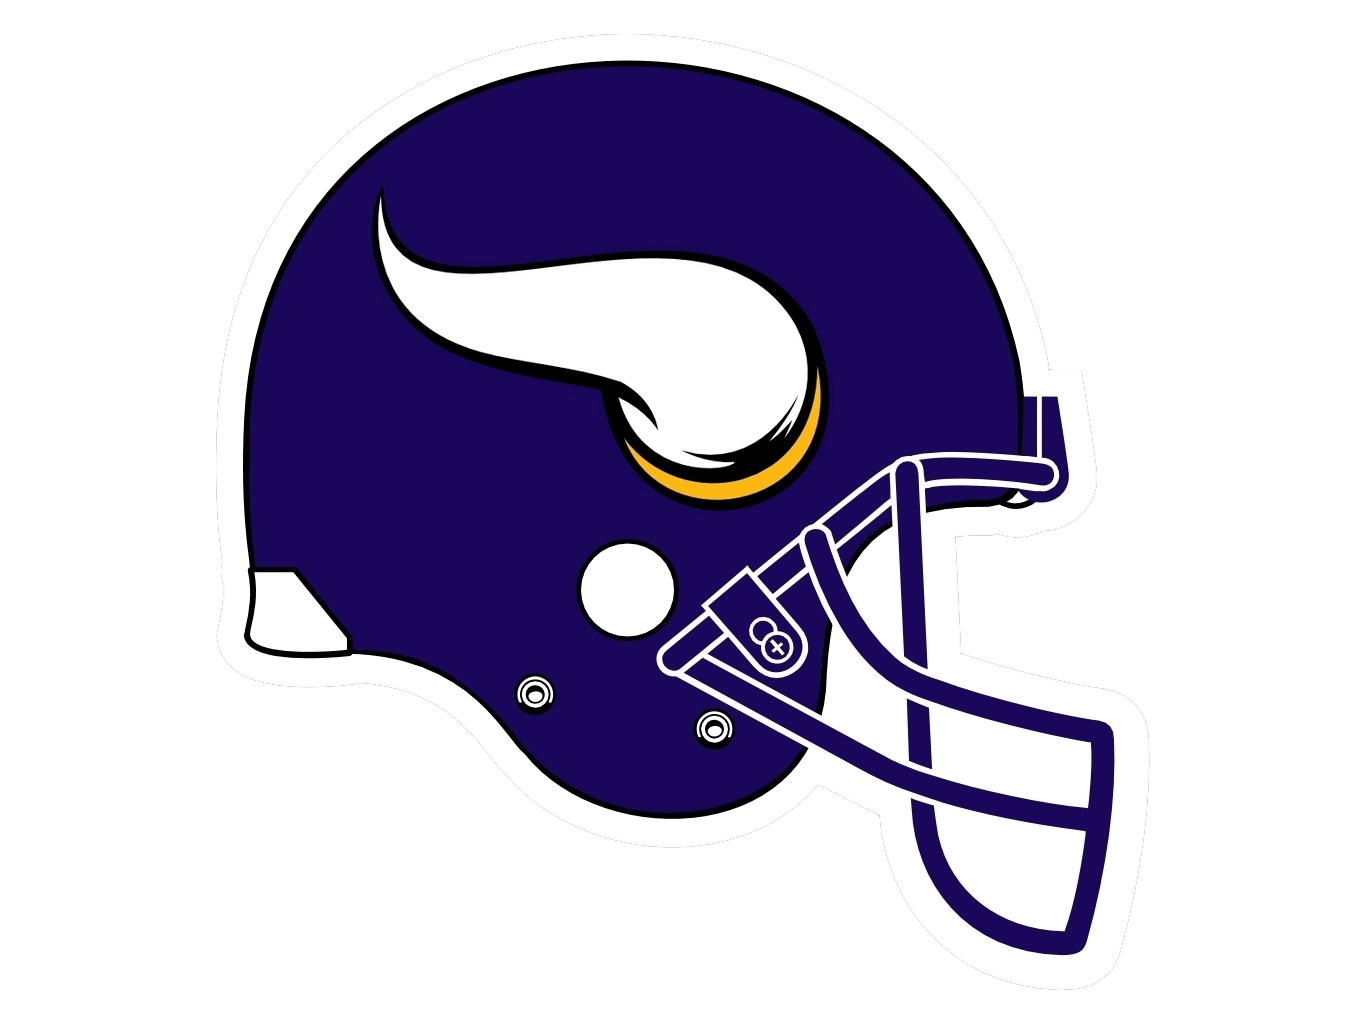 Vikings New Logo - Helmet Minnesota Vikings 2013 New Logo. Chris Creamer's SportsLogos